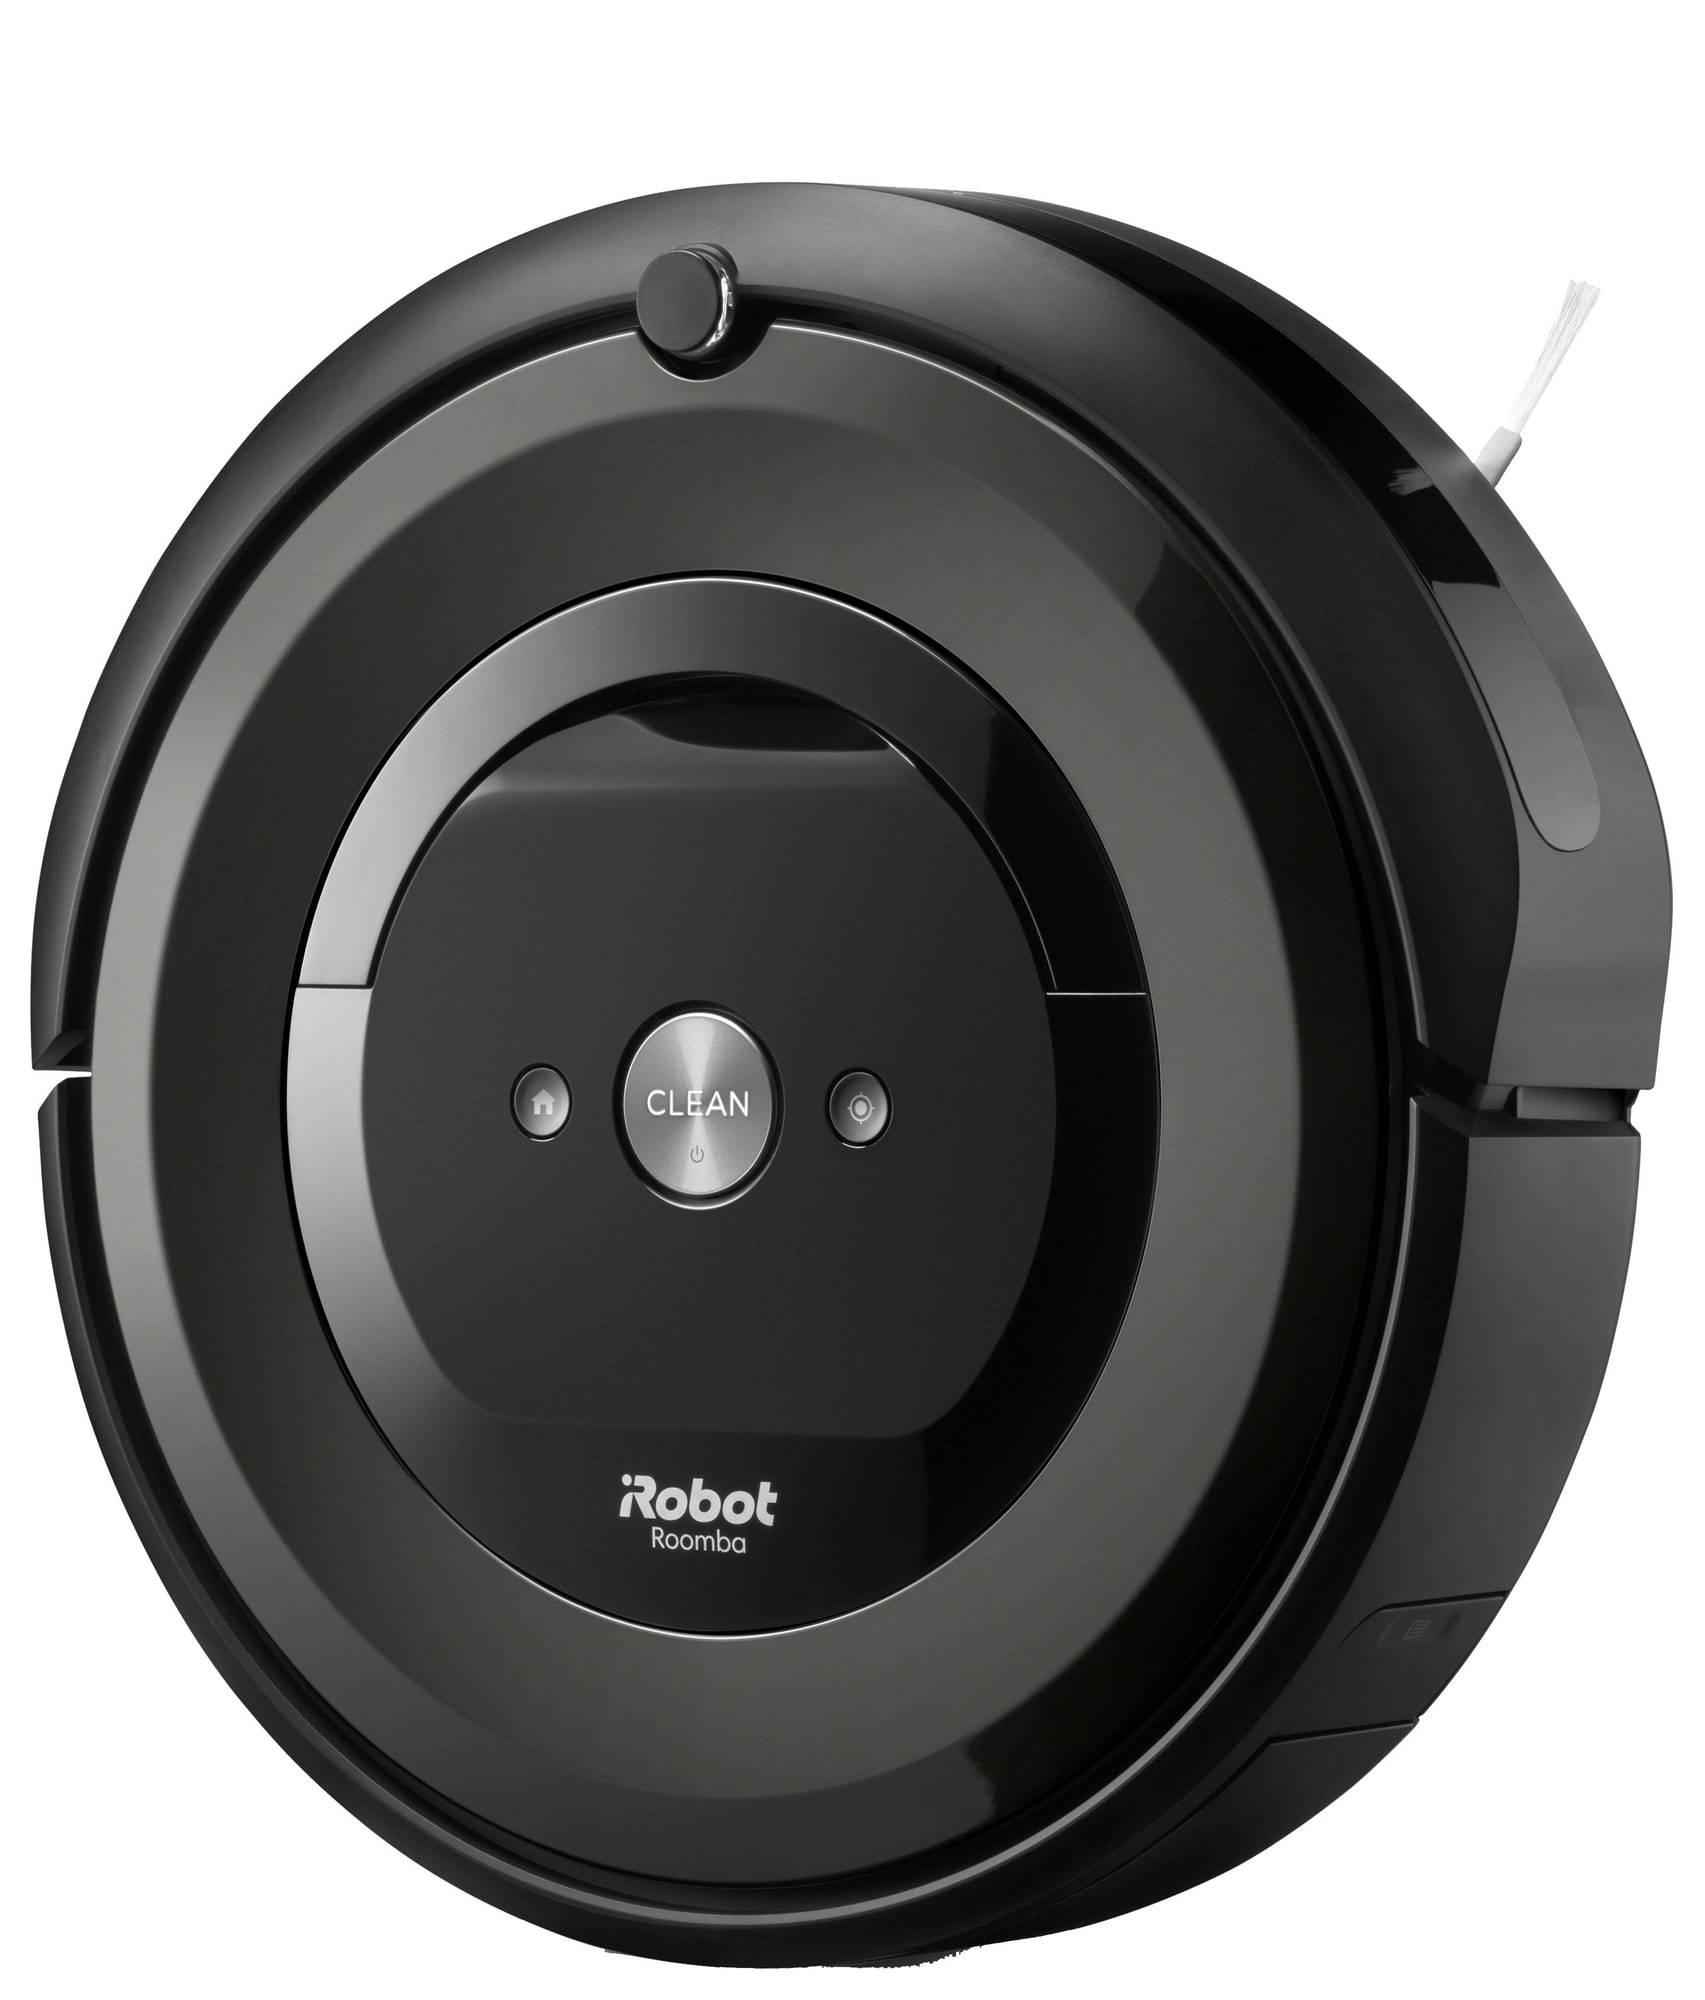 Roomba e5 e5158 homes - smartphone control